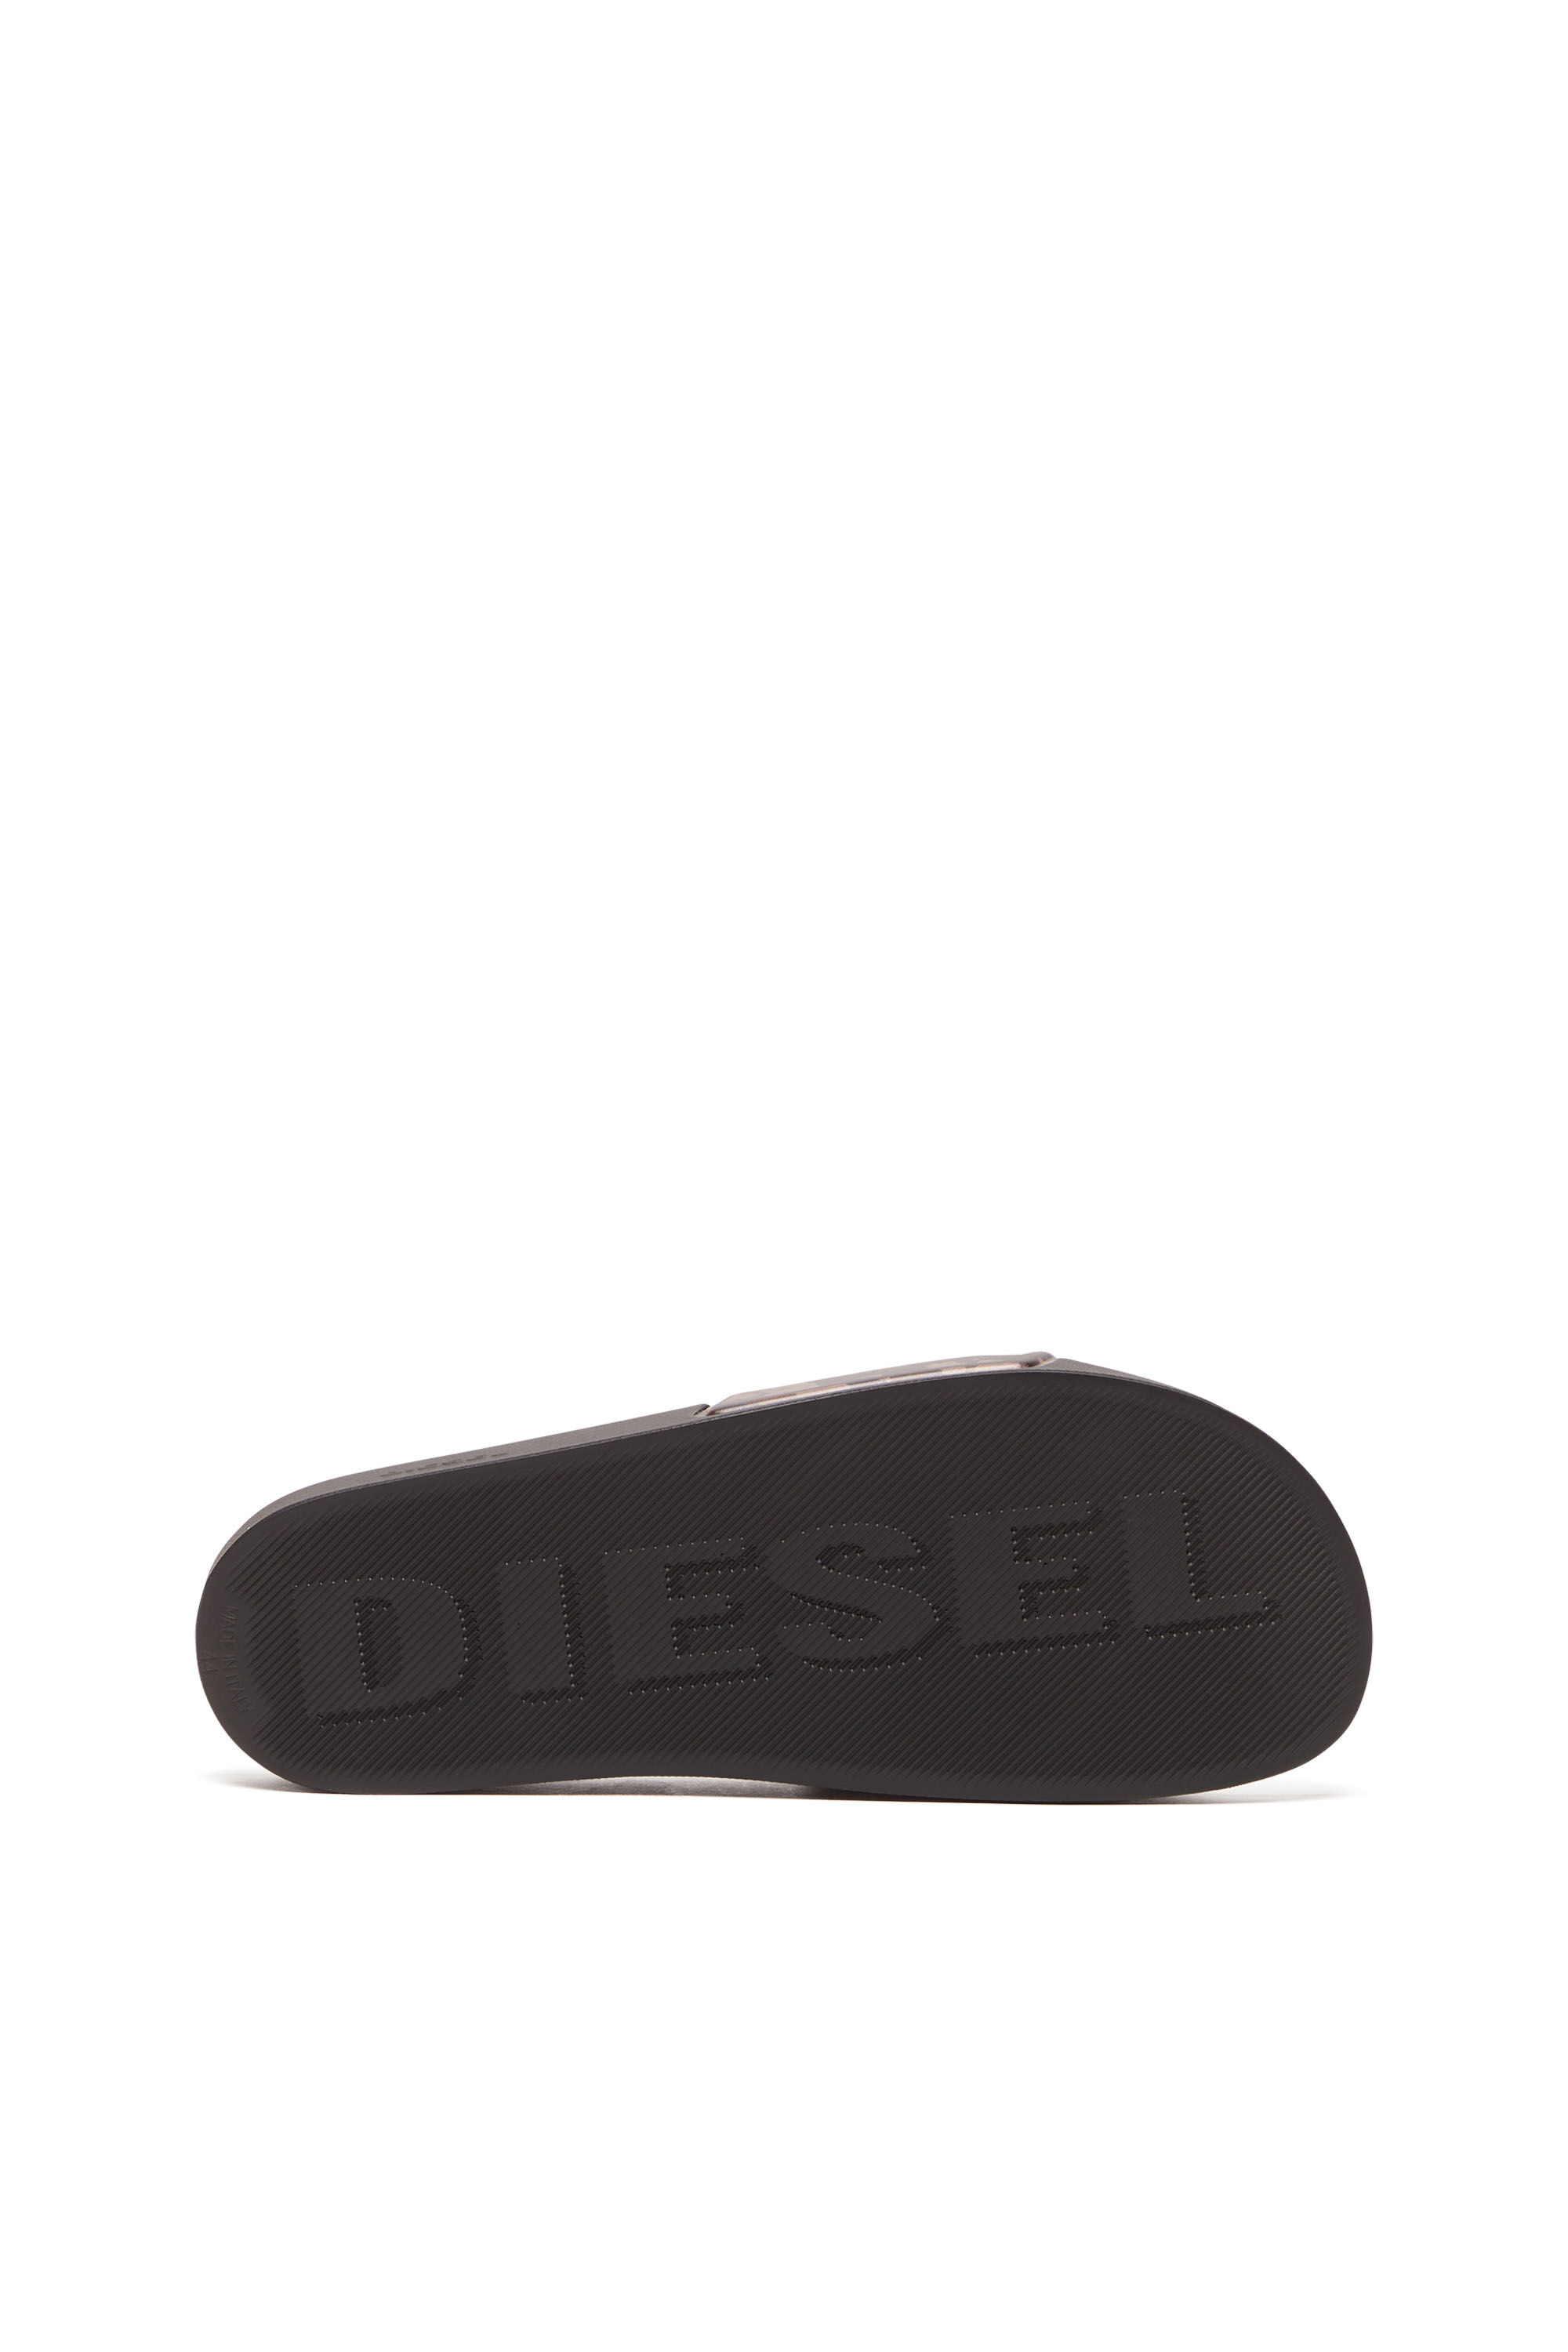 Diesel - SA-MAYEMI CC X, Noir - Image 5